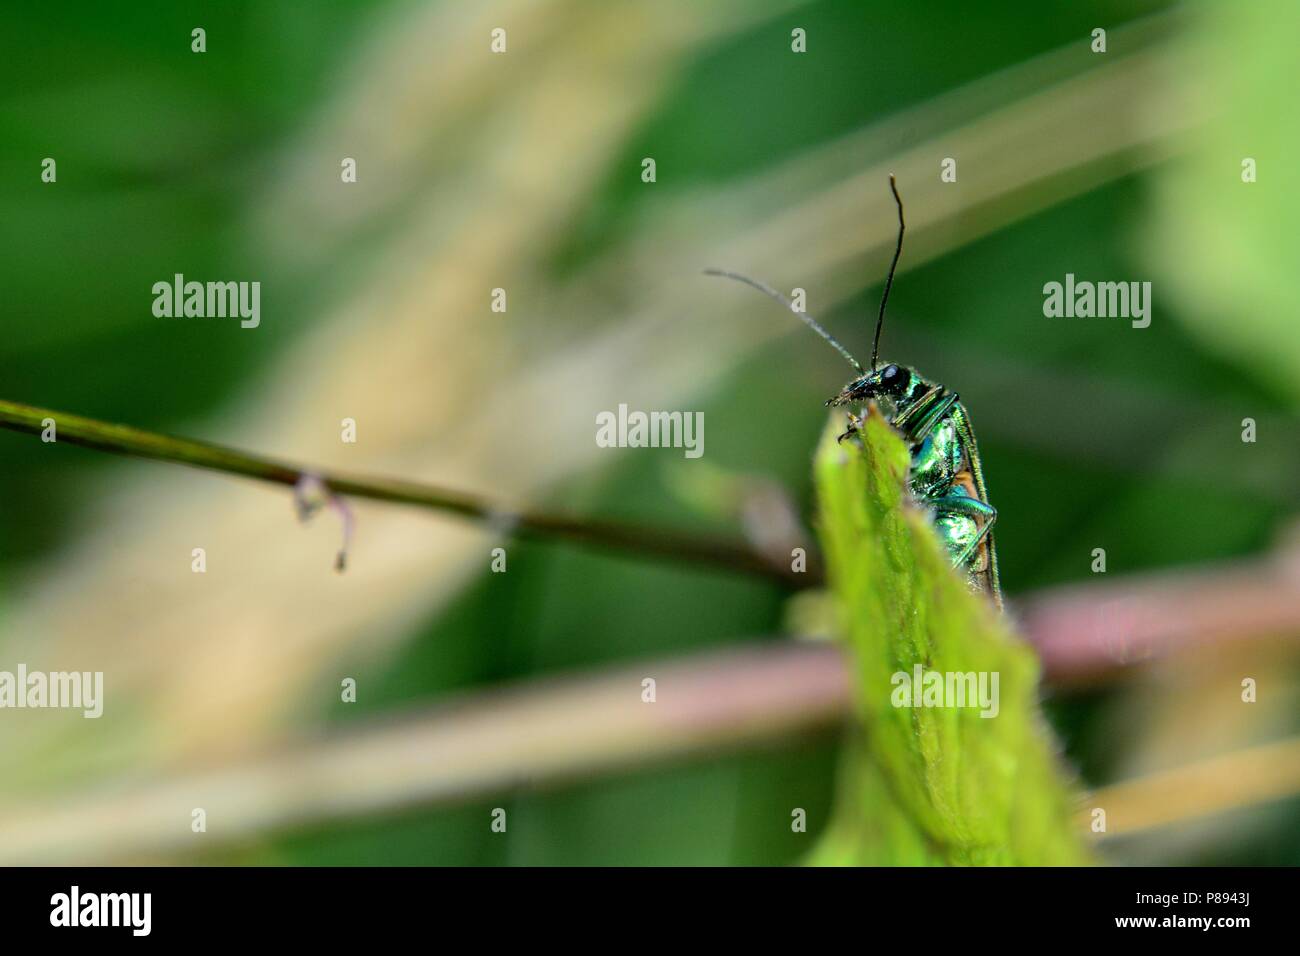 Lytta vesicatoria - Spanish green fly in nature Stock Photo